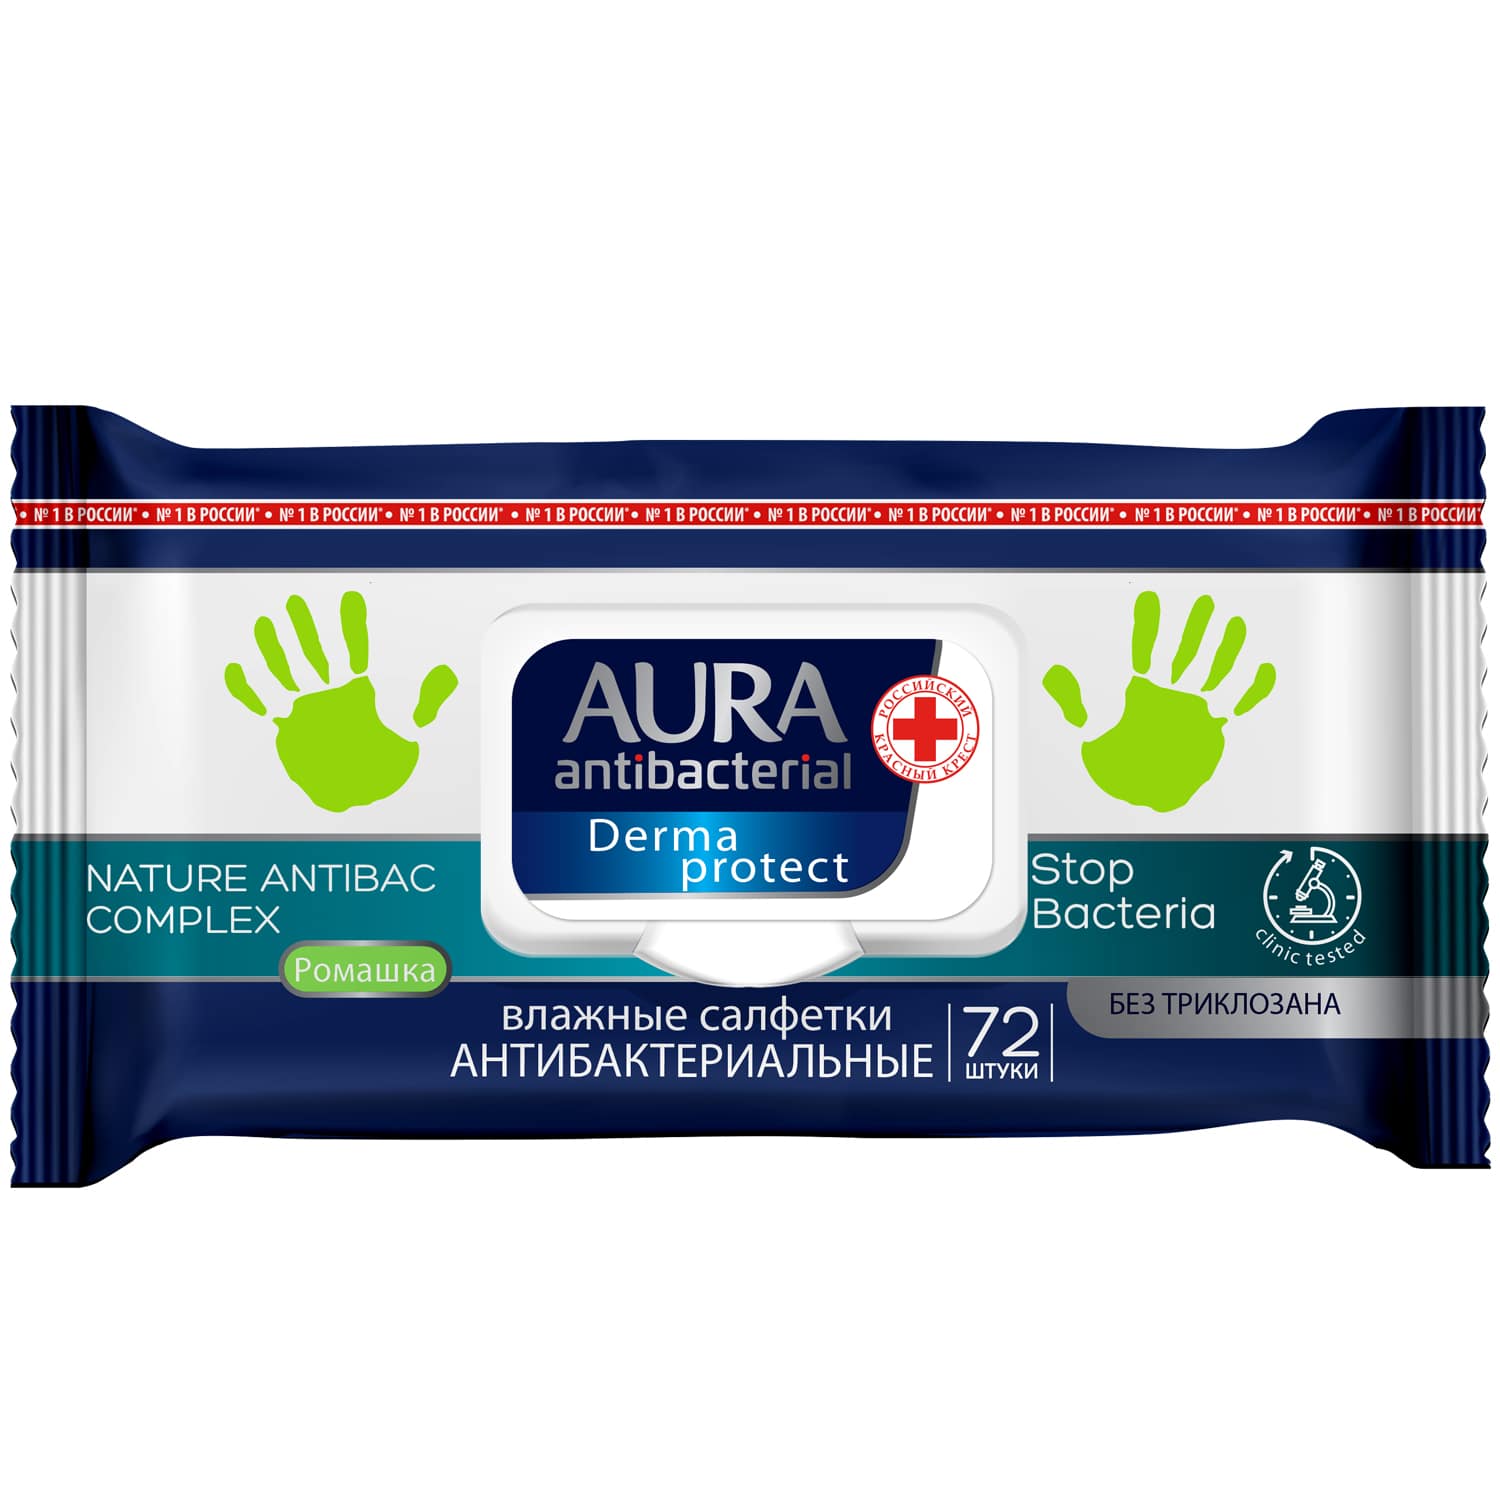 Aura Влажные салфетки антибактериальные Derma Protect с ромашкой и с крышкой 72 шт (Aura, Гигиена)